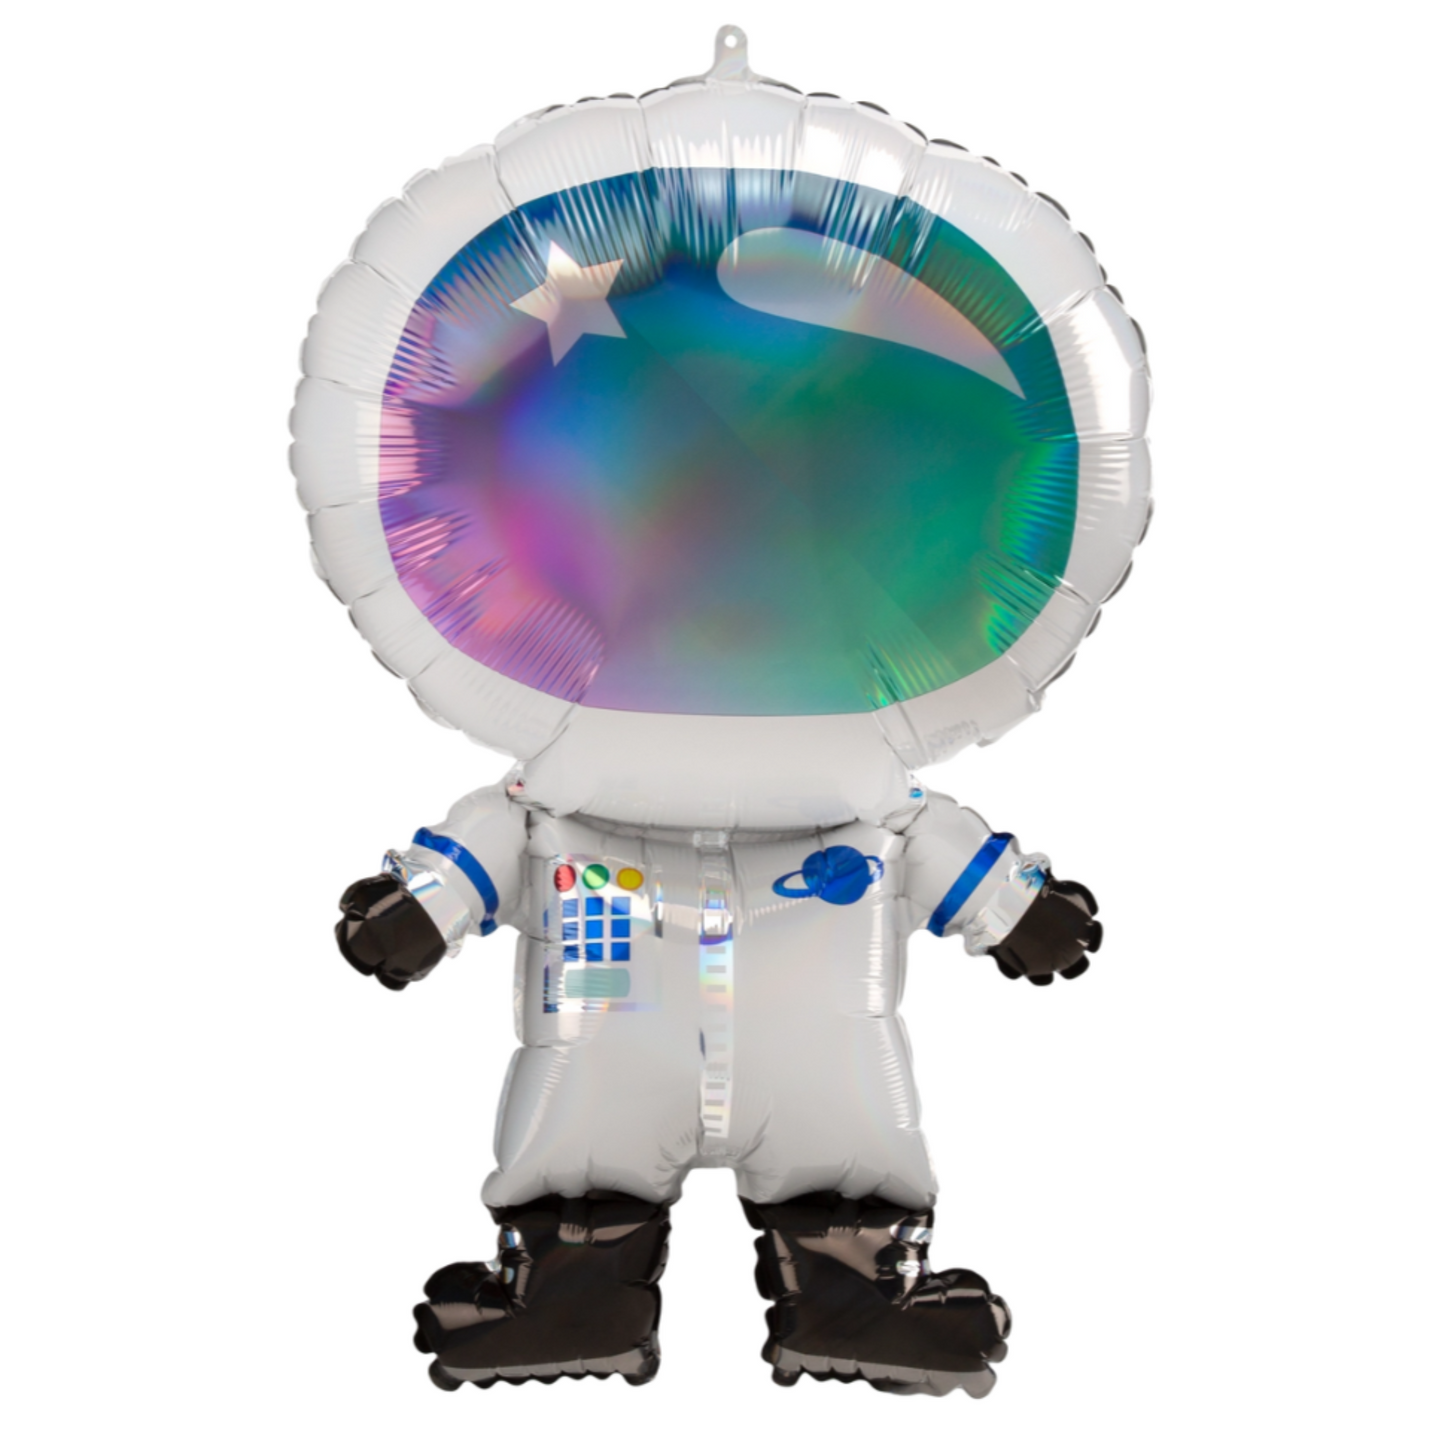 Iridescent Astronaut Balloon